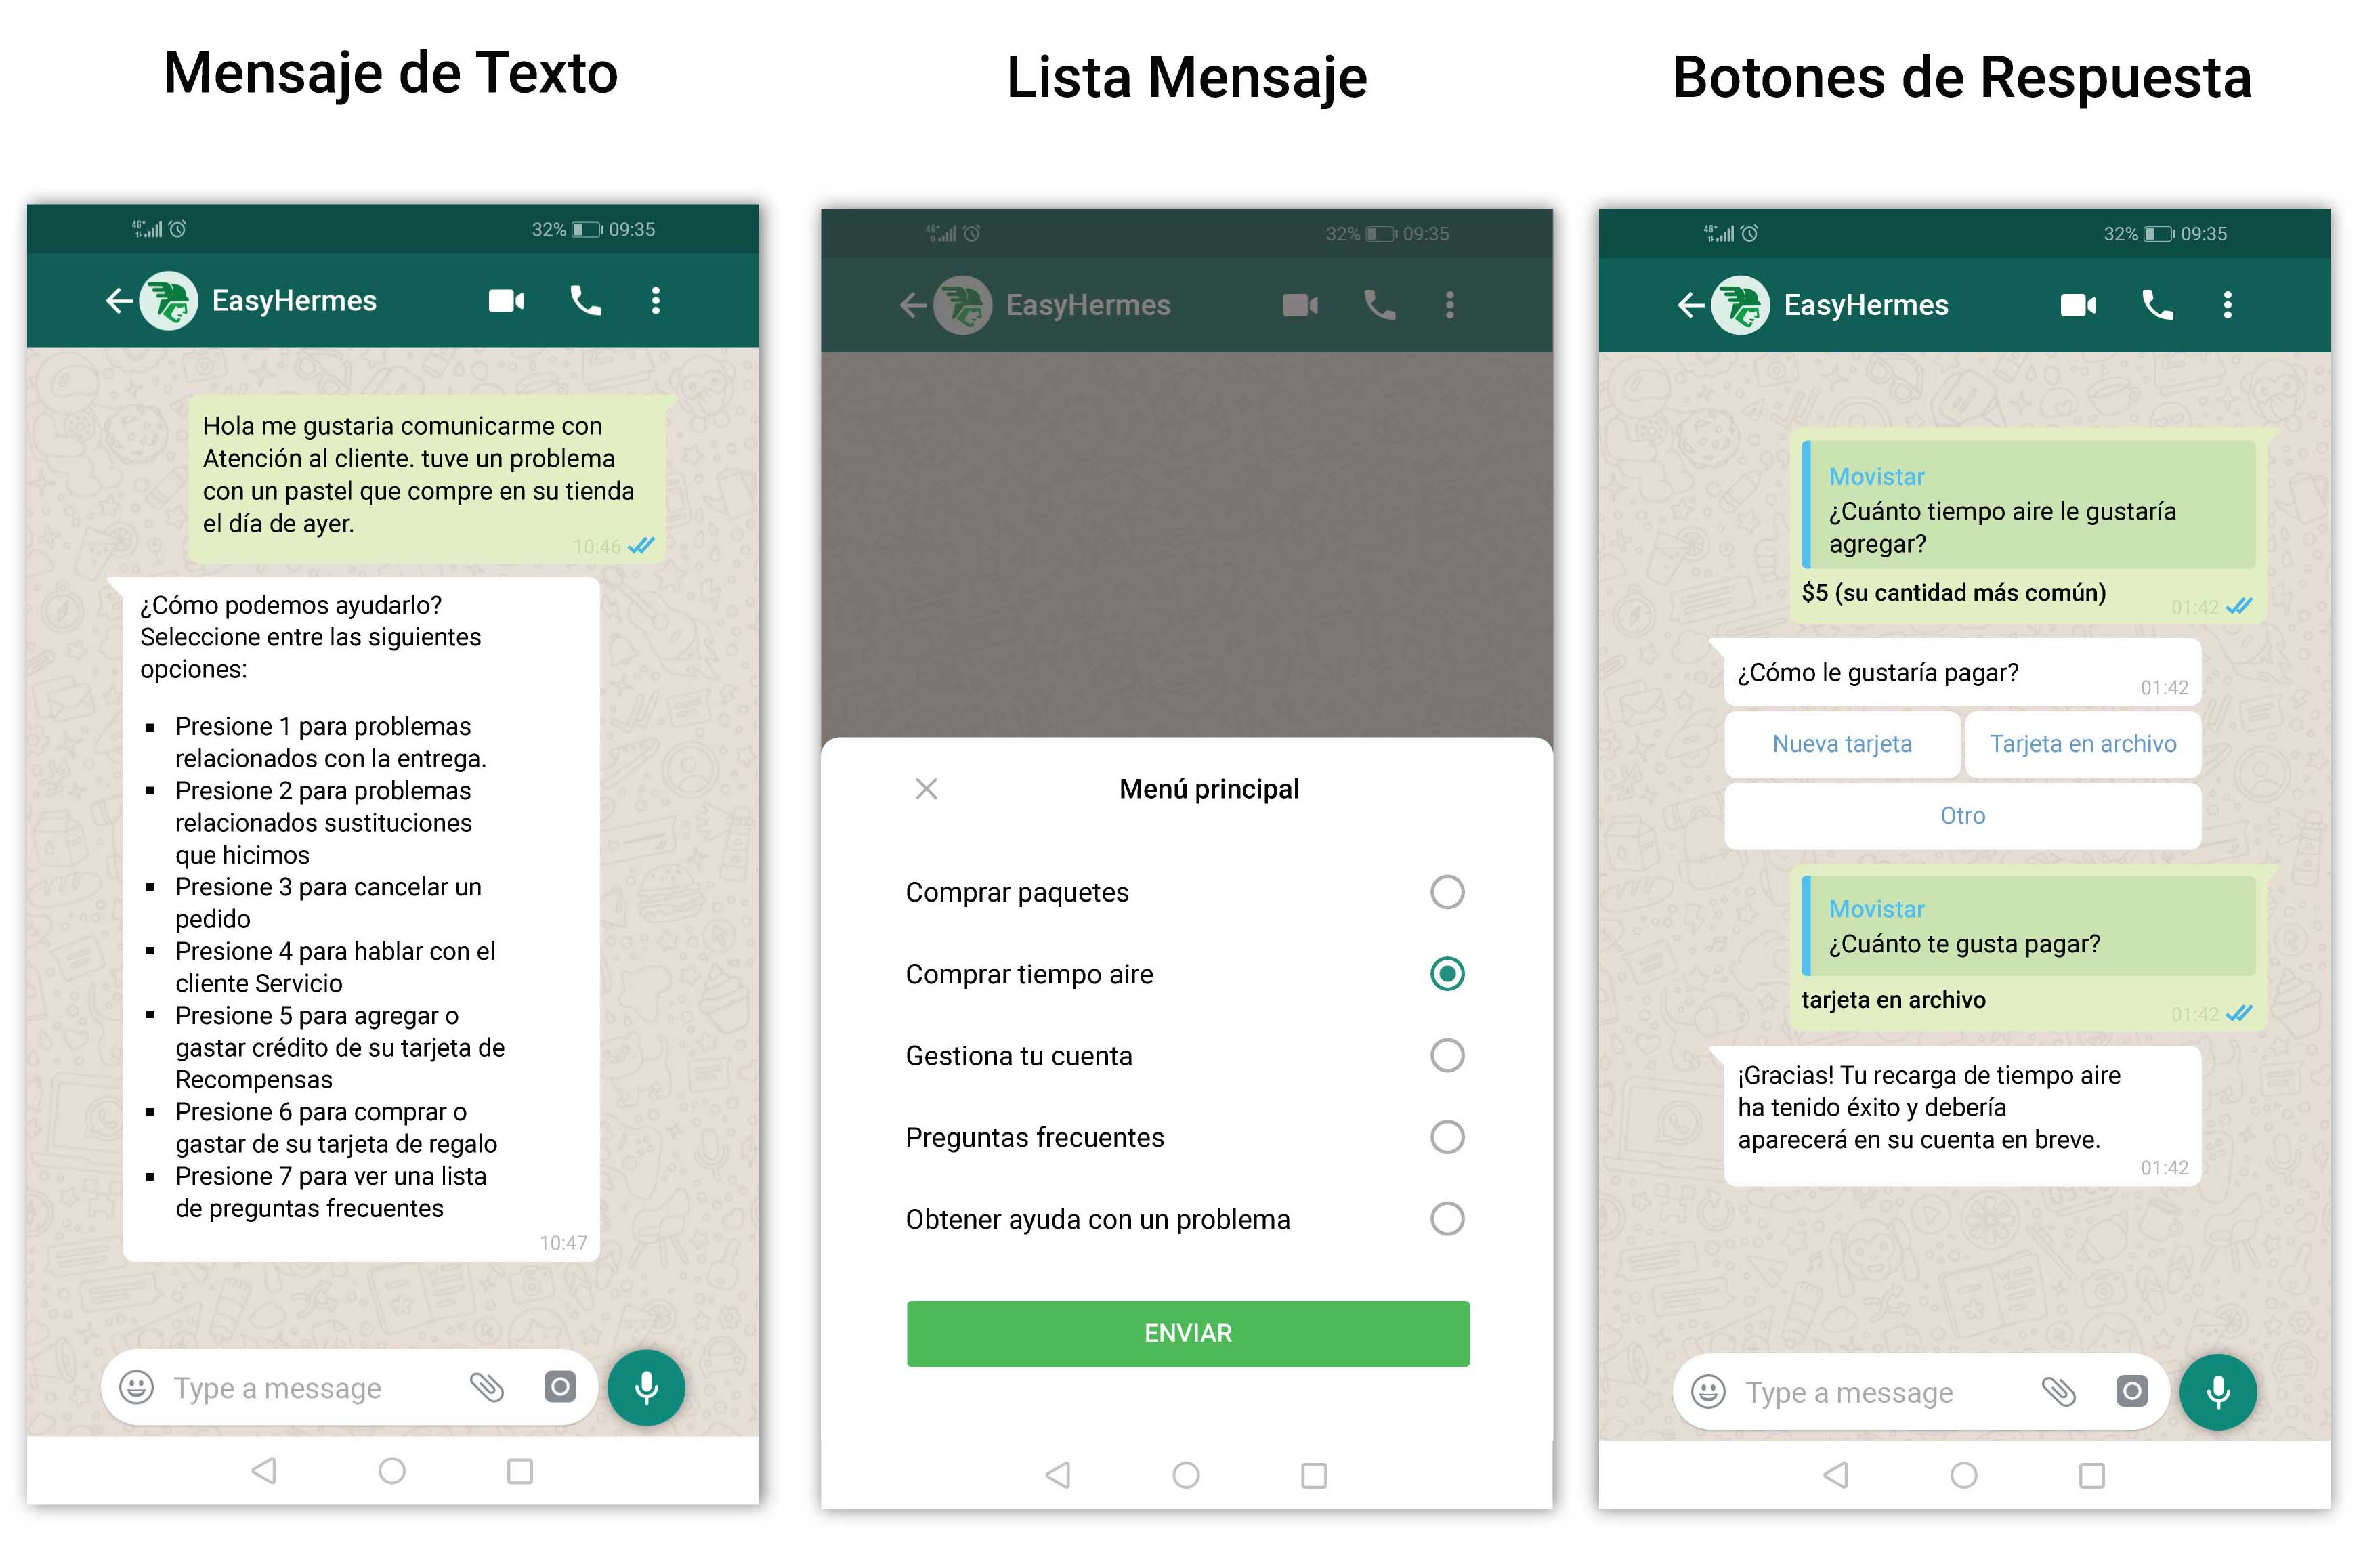 Mensaje de texto vs  Lista de mensajes o  Botones de respuesta